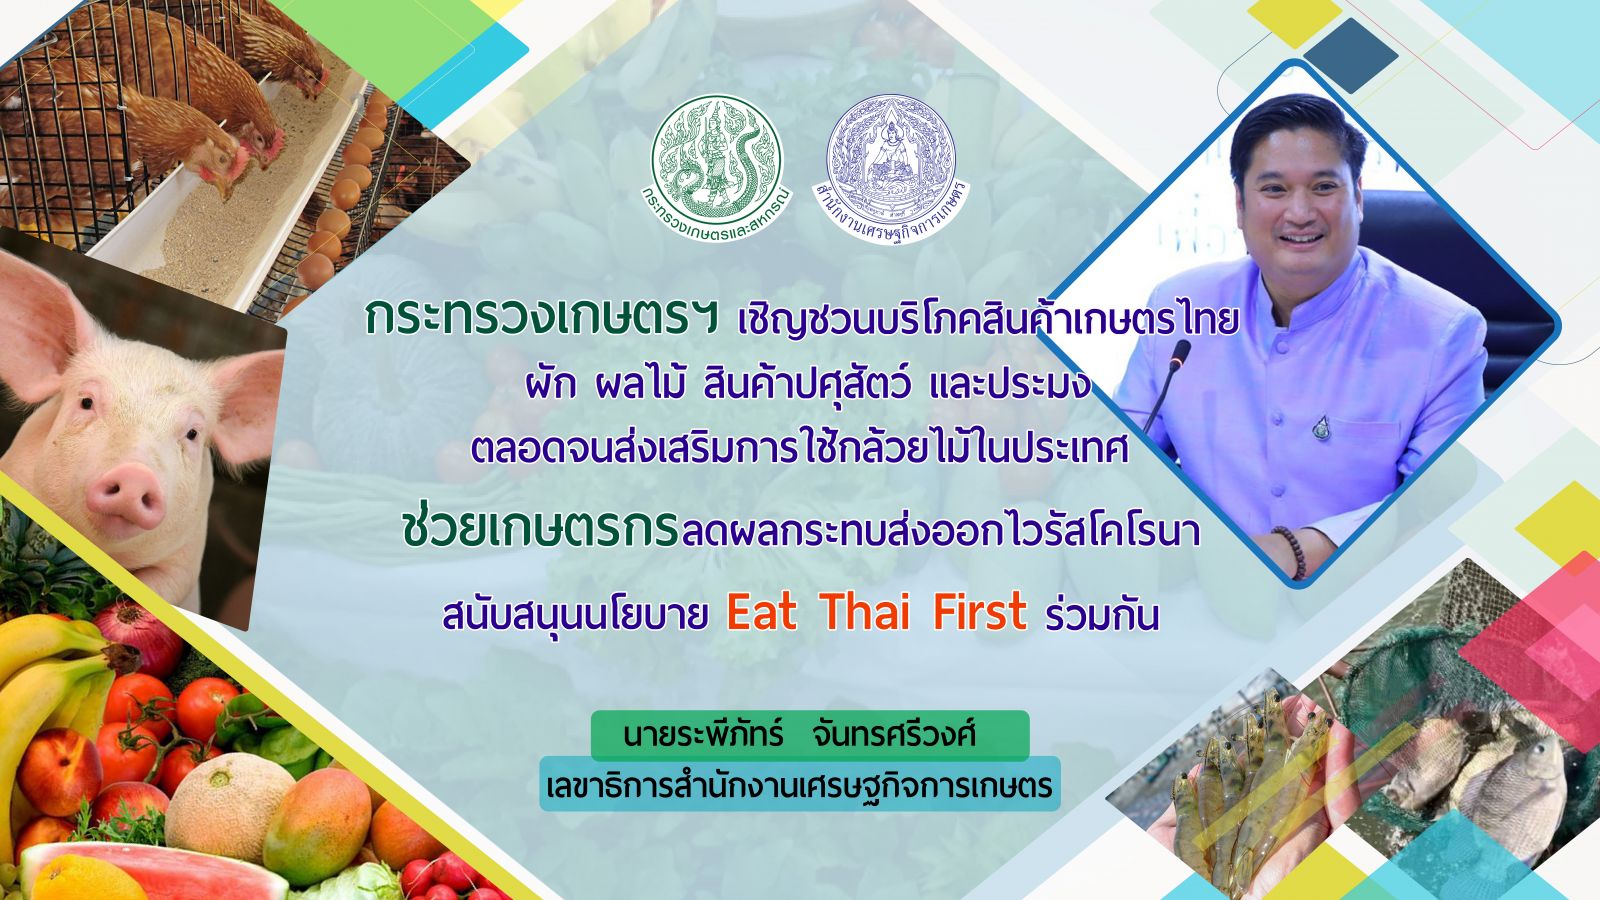 เกษตรฯ ชู Eat Thai First  อาหารไทยยืนหนึ่ง ร่วมรณรงค์อุดหนุนสินค้าเกษตรไทย ช่วยเกษตรกรลดผลกระทบส่งออกจากไวรัสโคโรนา